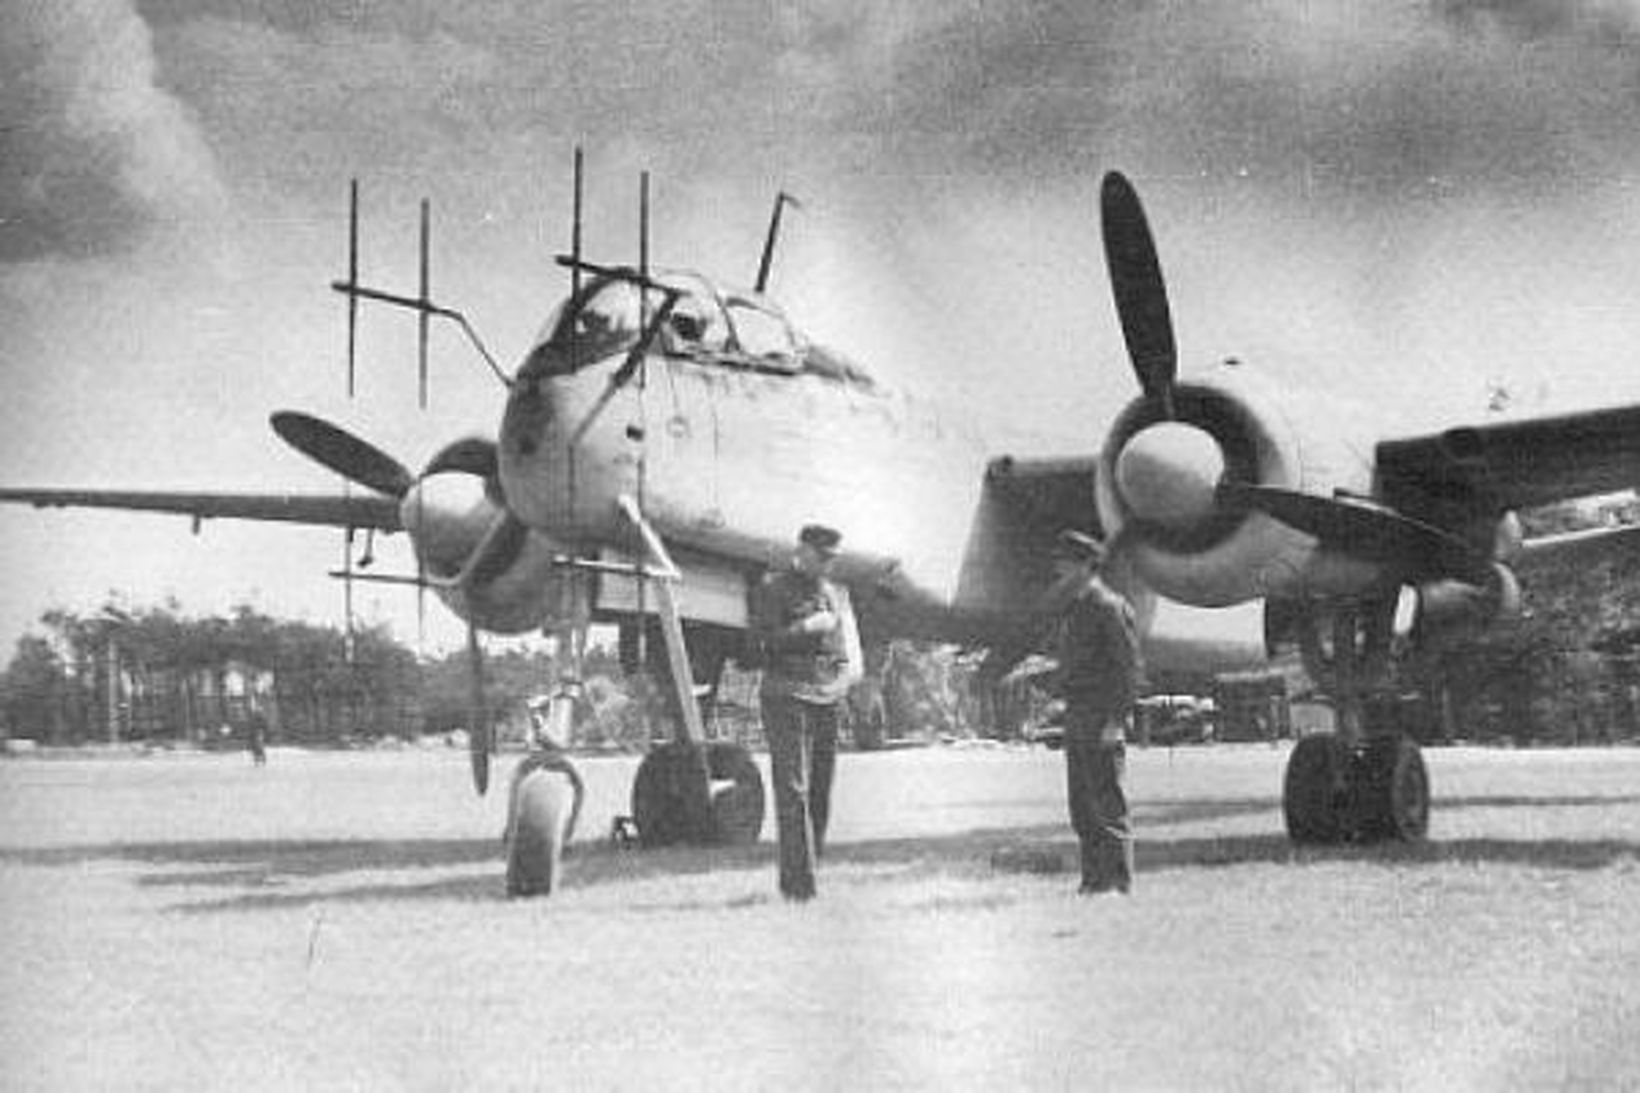 Flugvél af tegundinni Heinkel HE-219.